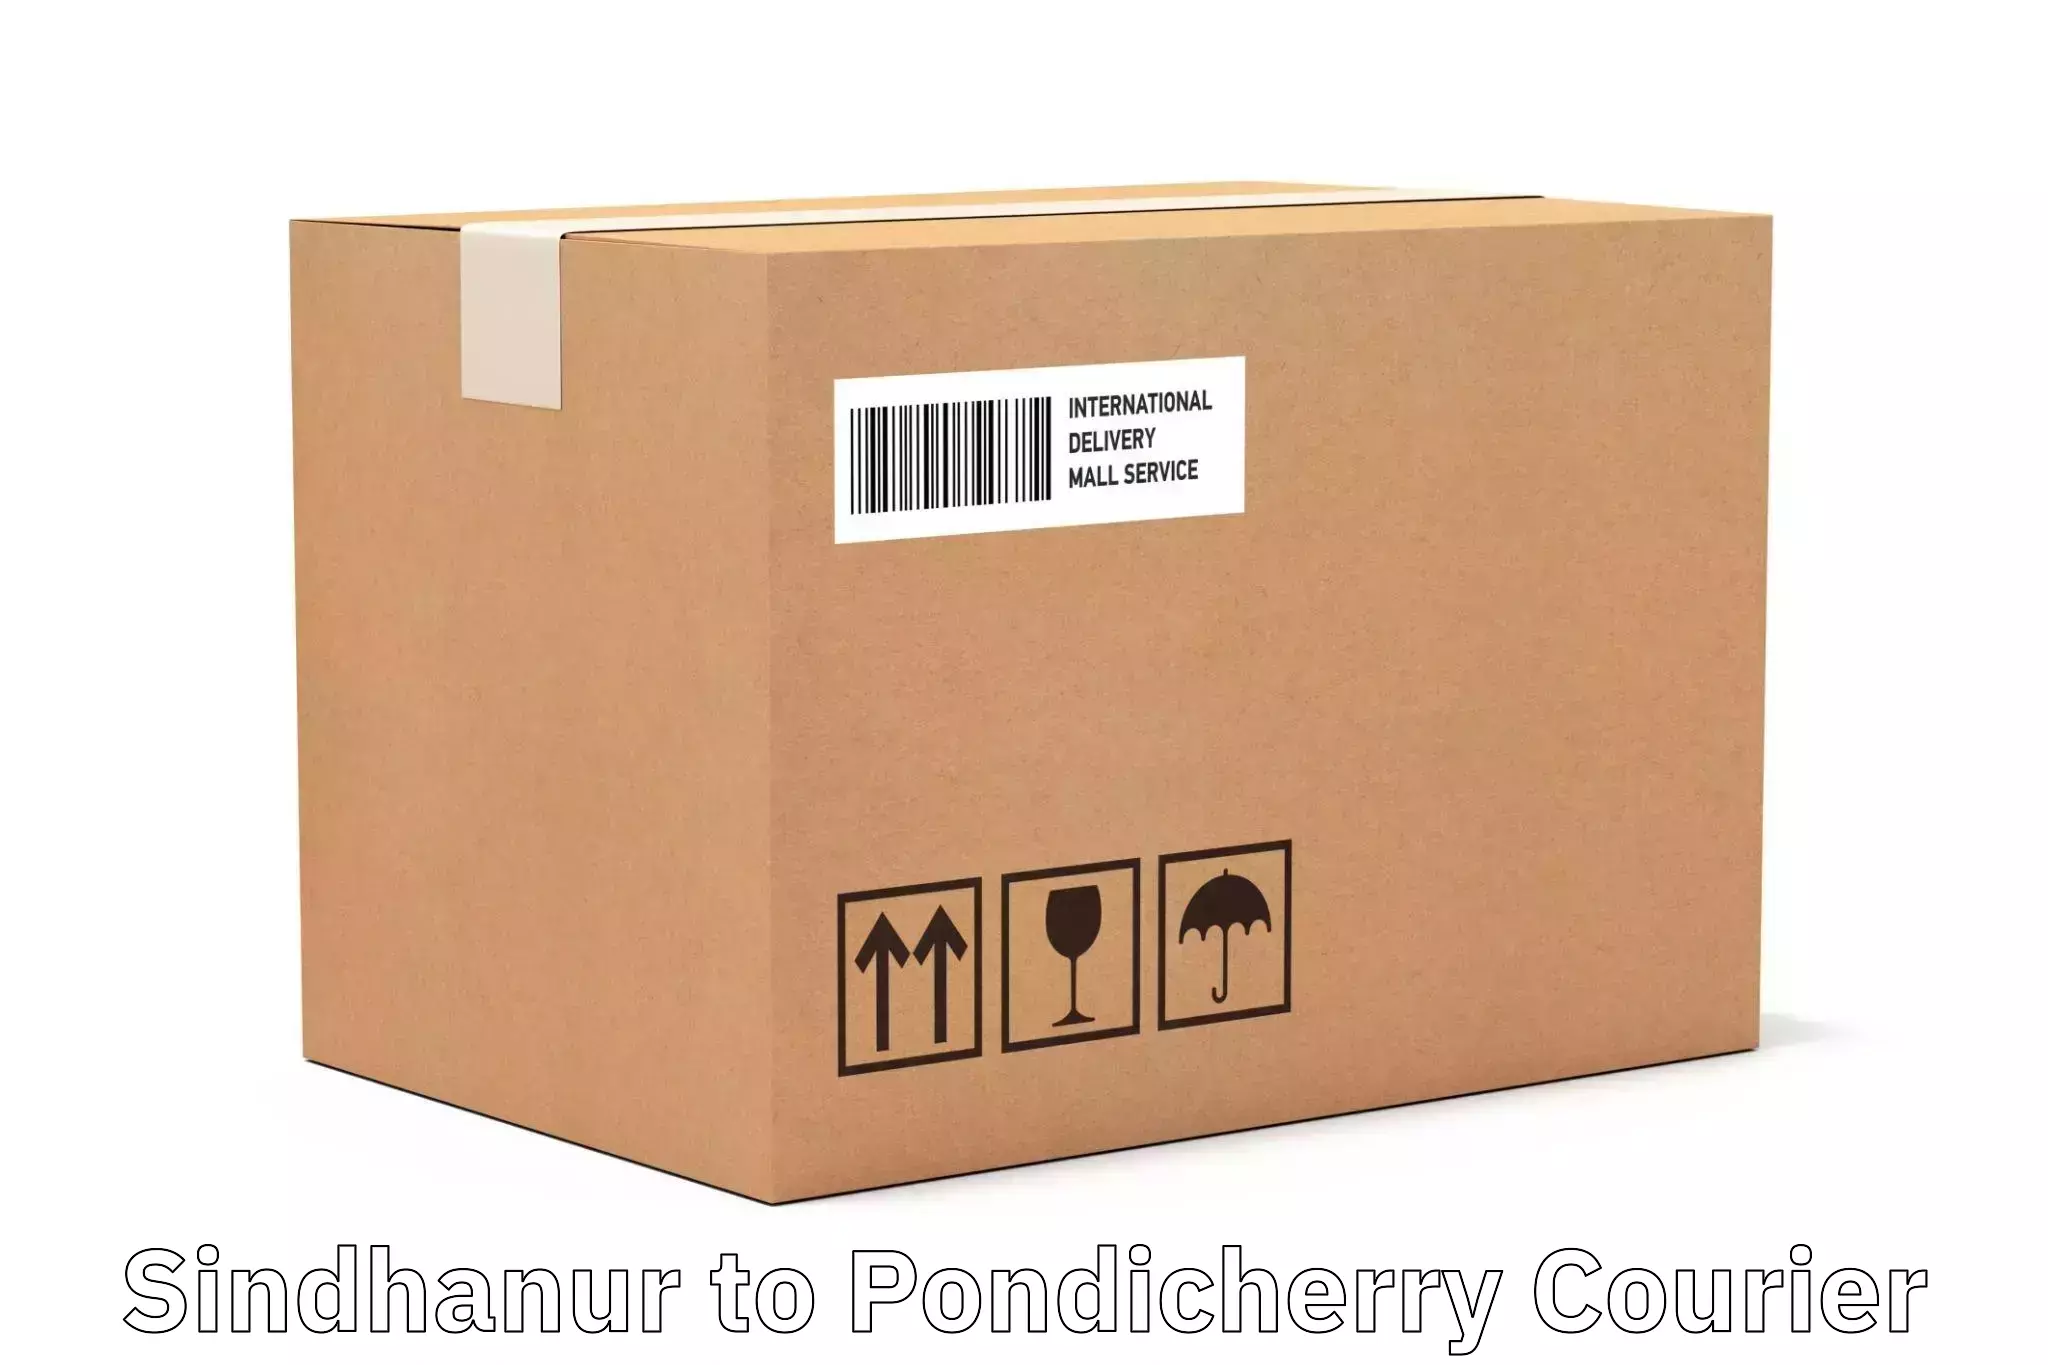 Efficient parcel service Sindhanur to Pondicherry